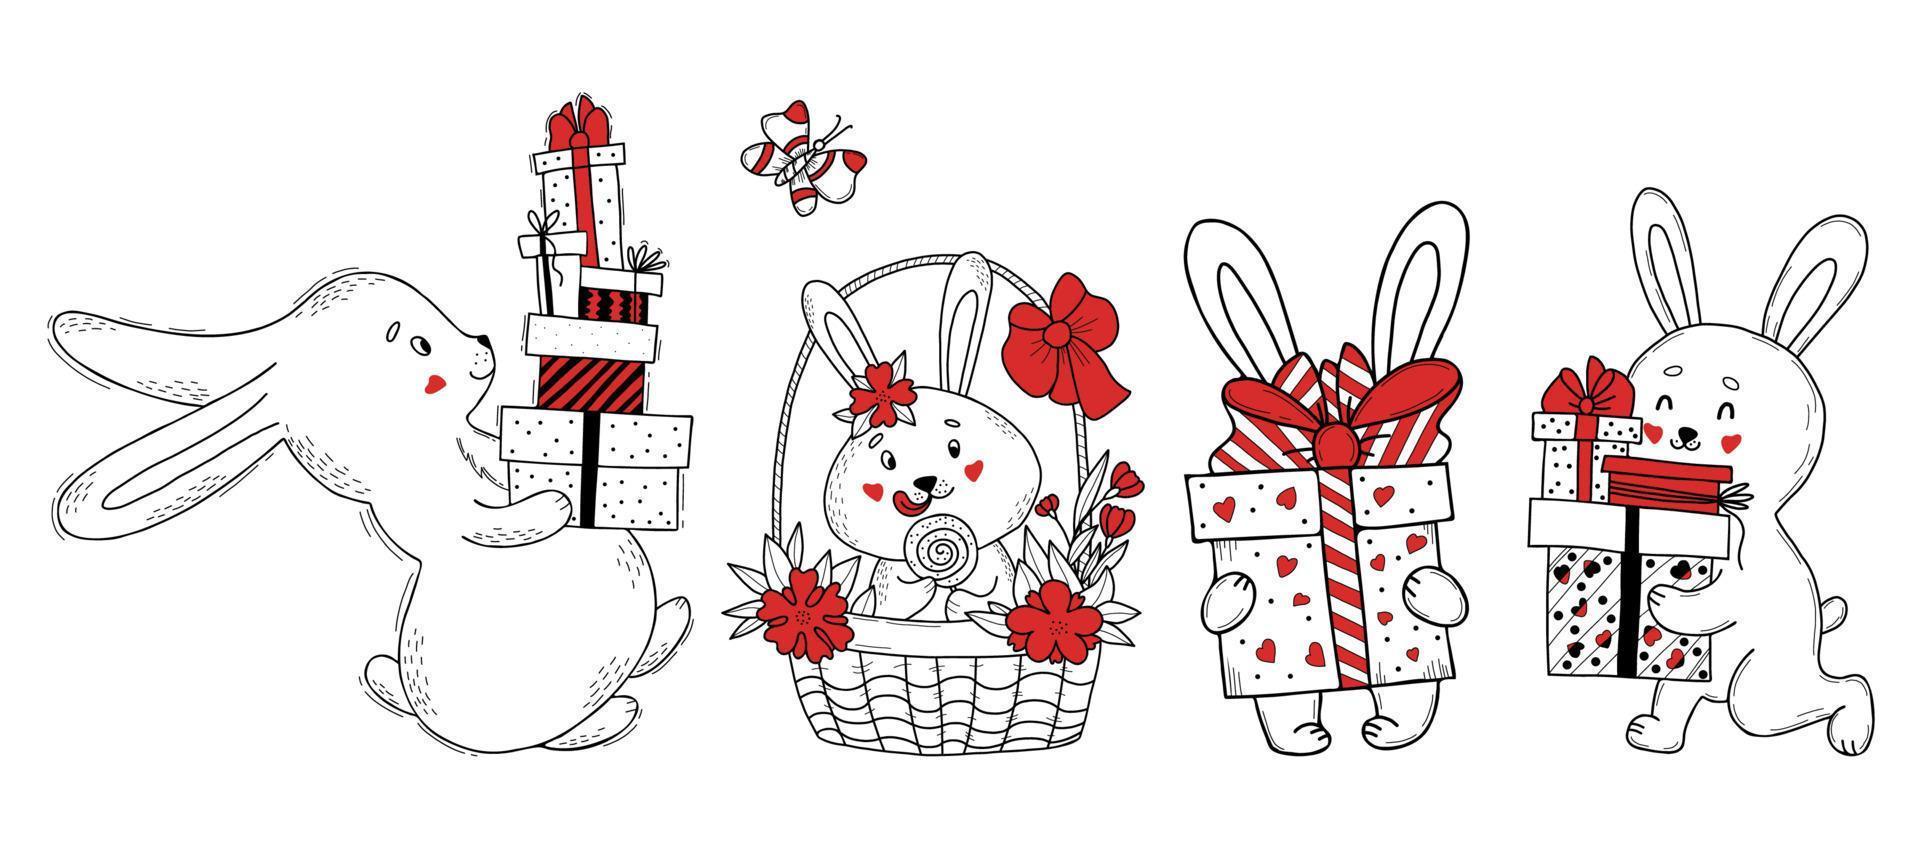 lindo personaje de conejo con regalos. conejito con cajas y regalos, en una canasta de pascua con flores y dulces. ilustración vectorial dibujo hecho a mano aislado para diseño, decoración, saludo y tarjetas de pascua vector